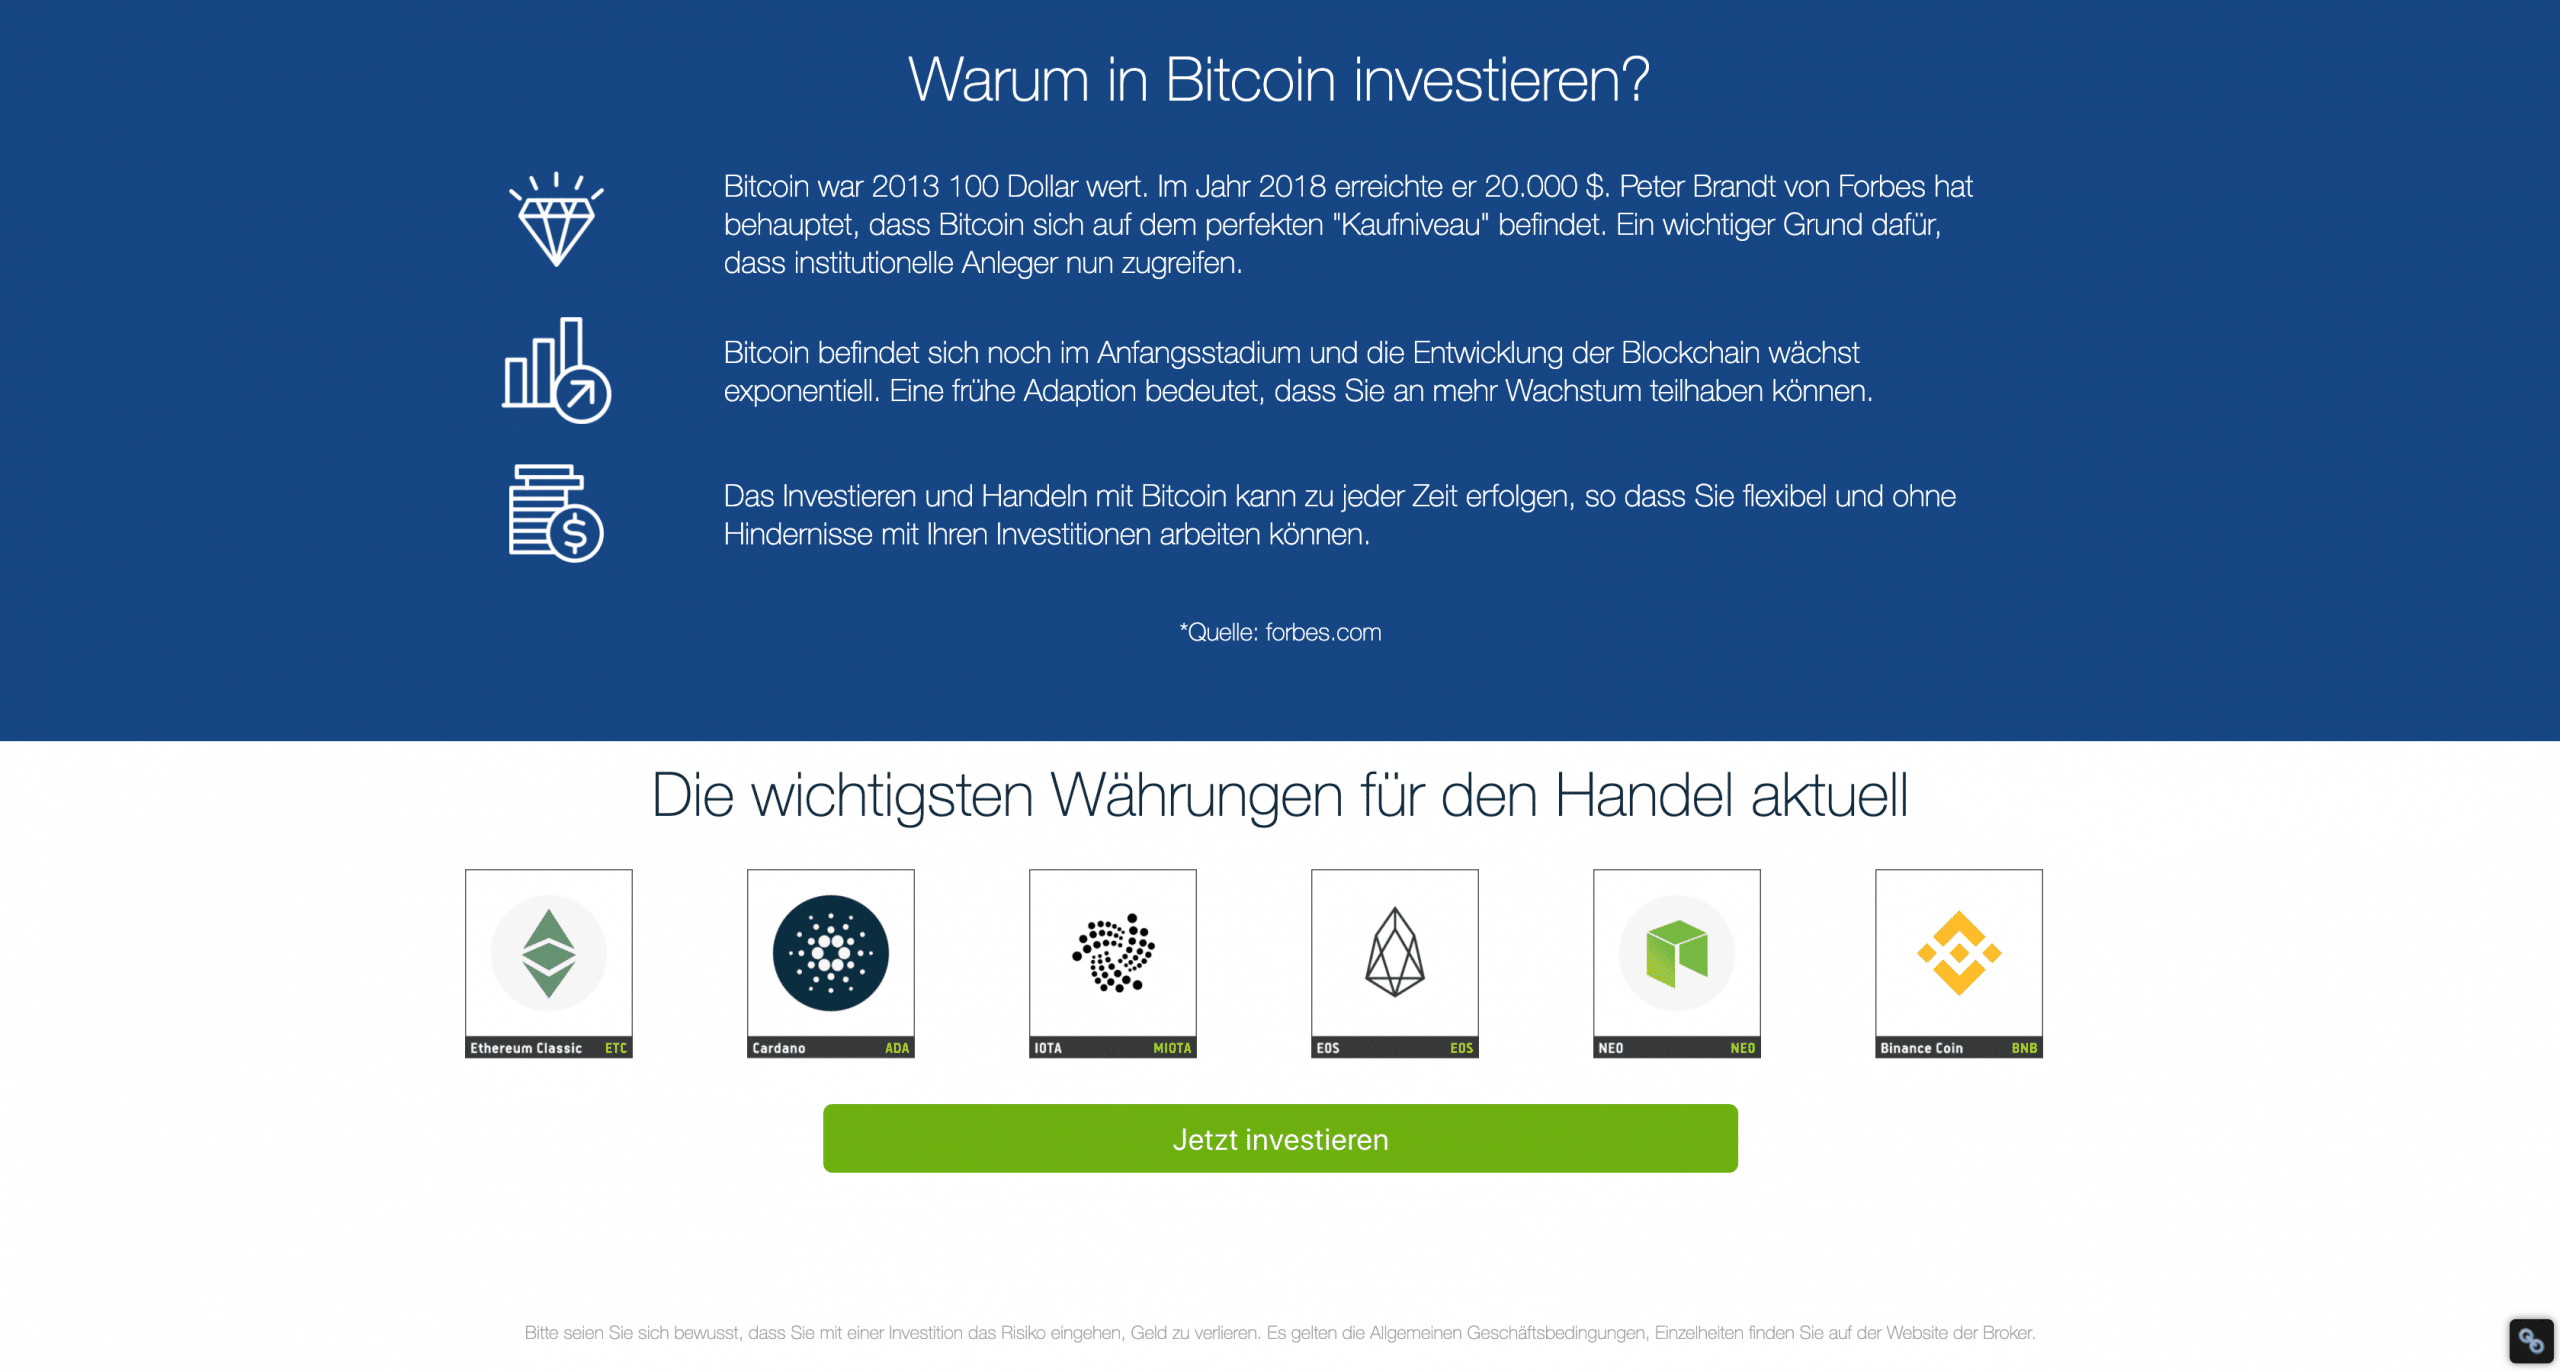 profit bitcoin ja oder nein